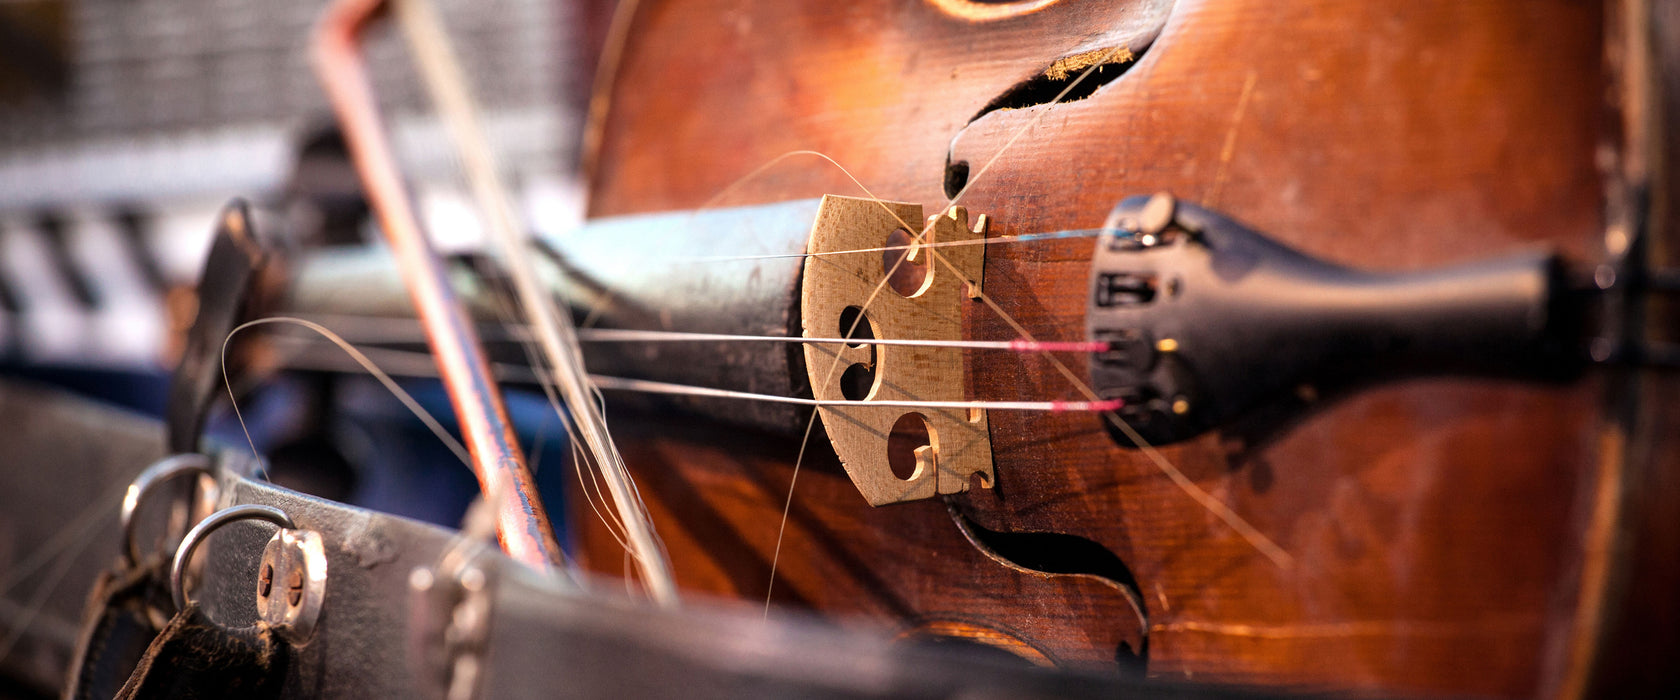 Alte Violine, Glasbild Panorama